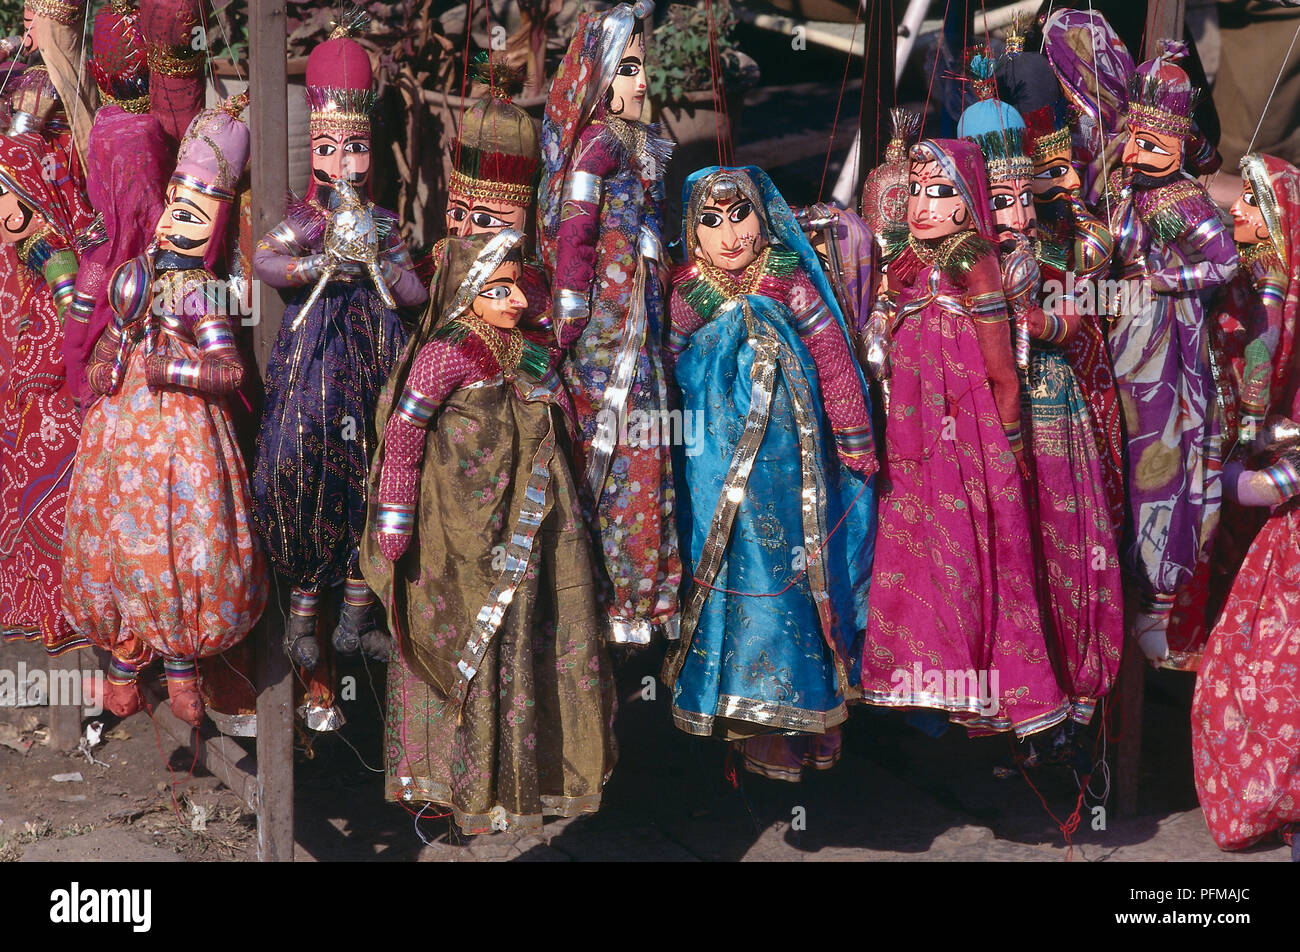 Indien, sireh Deori Basar, bunten Marionetten für Verkauf, tragen bunte traditionelle indische Kleidung, weibliche Puppen tragen leuchtenden Saris, männliche Puppen mit großen schwarzen Schnurrbart, hängen durch roten String. Stockfoto